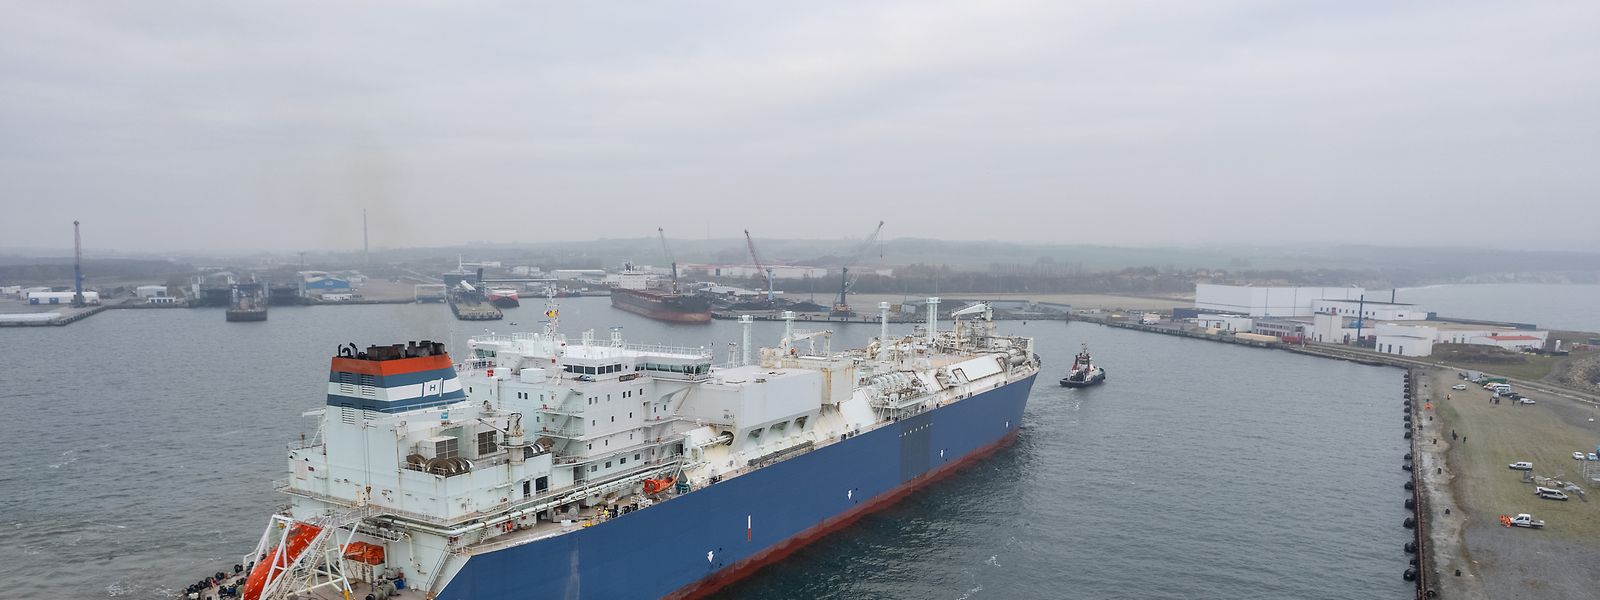 Das erste Spezialschiff zur Umwandlung von verflüssigtem Erdgas in den gasförmigen Zustand ist in Deutschland angekommen.